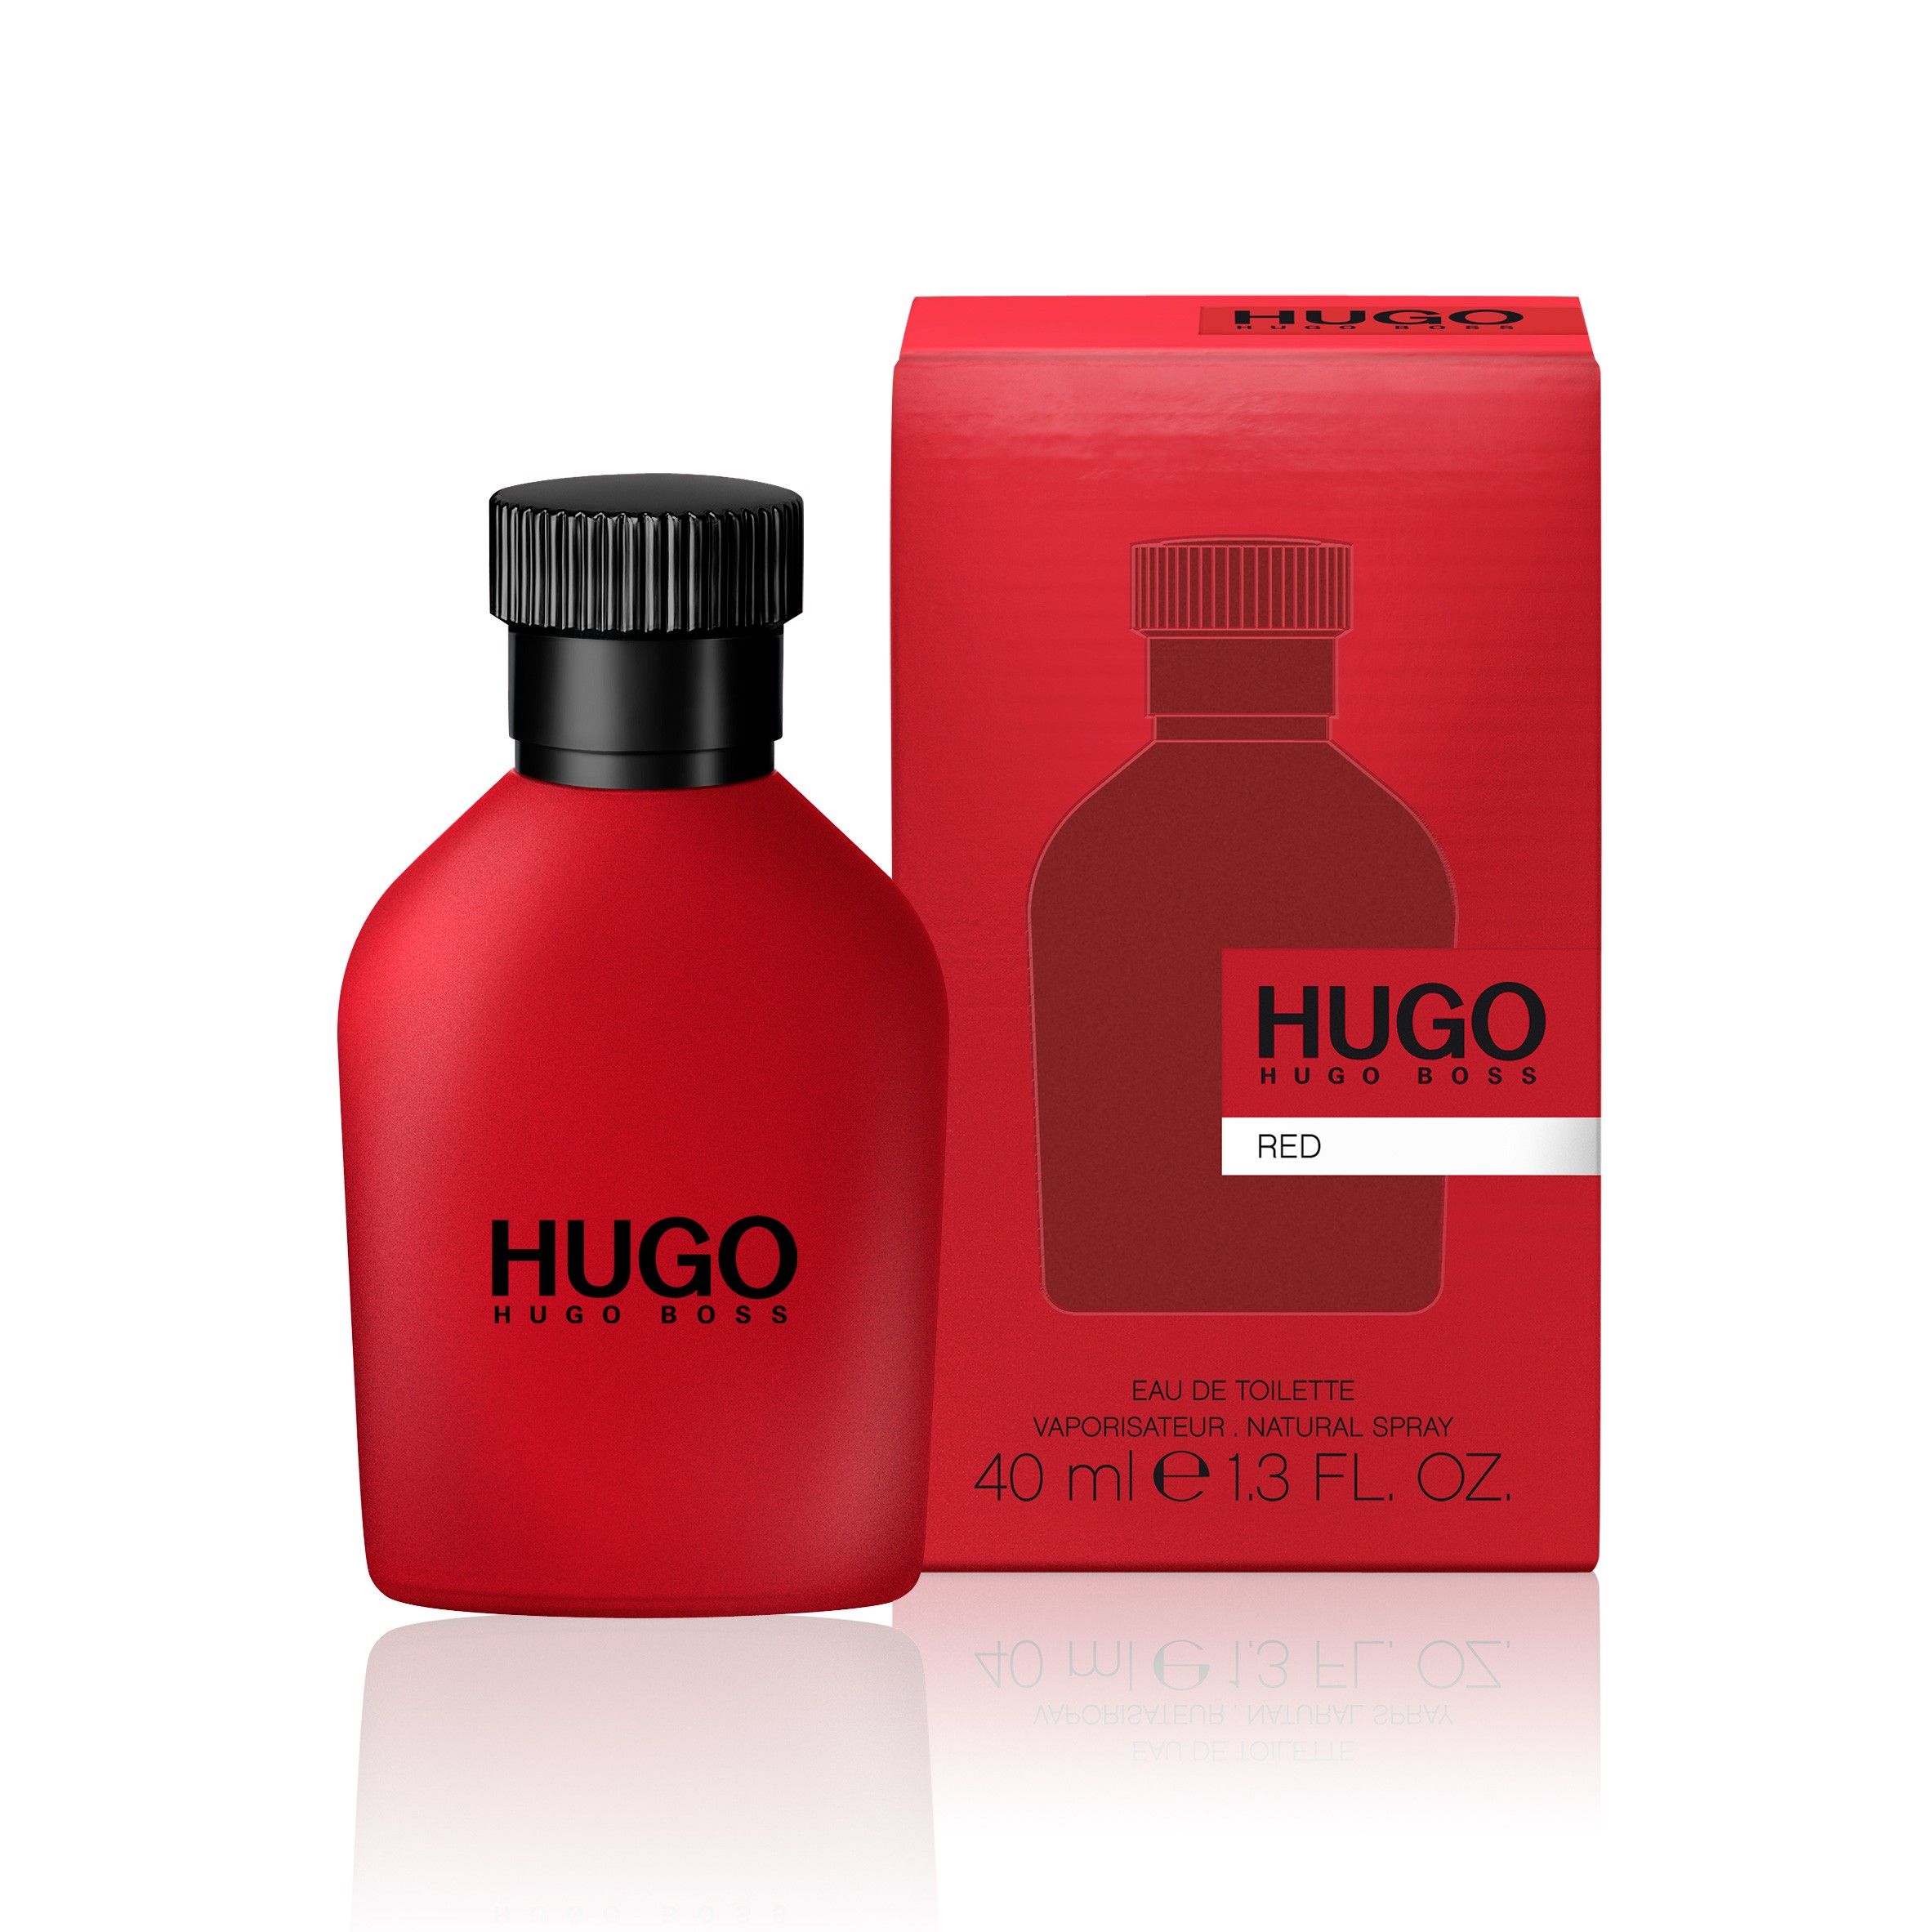 Хуго босс описание. Hugo Boss "Hugo Red" EDT, 100ml. Hugo Boss Red, EDT., 150 ml. Hugo Boss Red EDT Хьюго босс ред туалетная вода 150 ml. Hugo Boss мужской Hugo туалетная вода (EDT) 40мл.